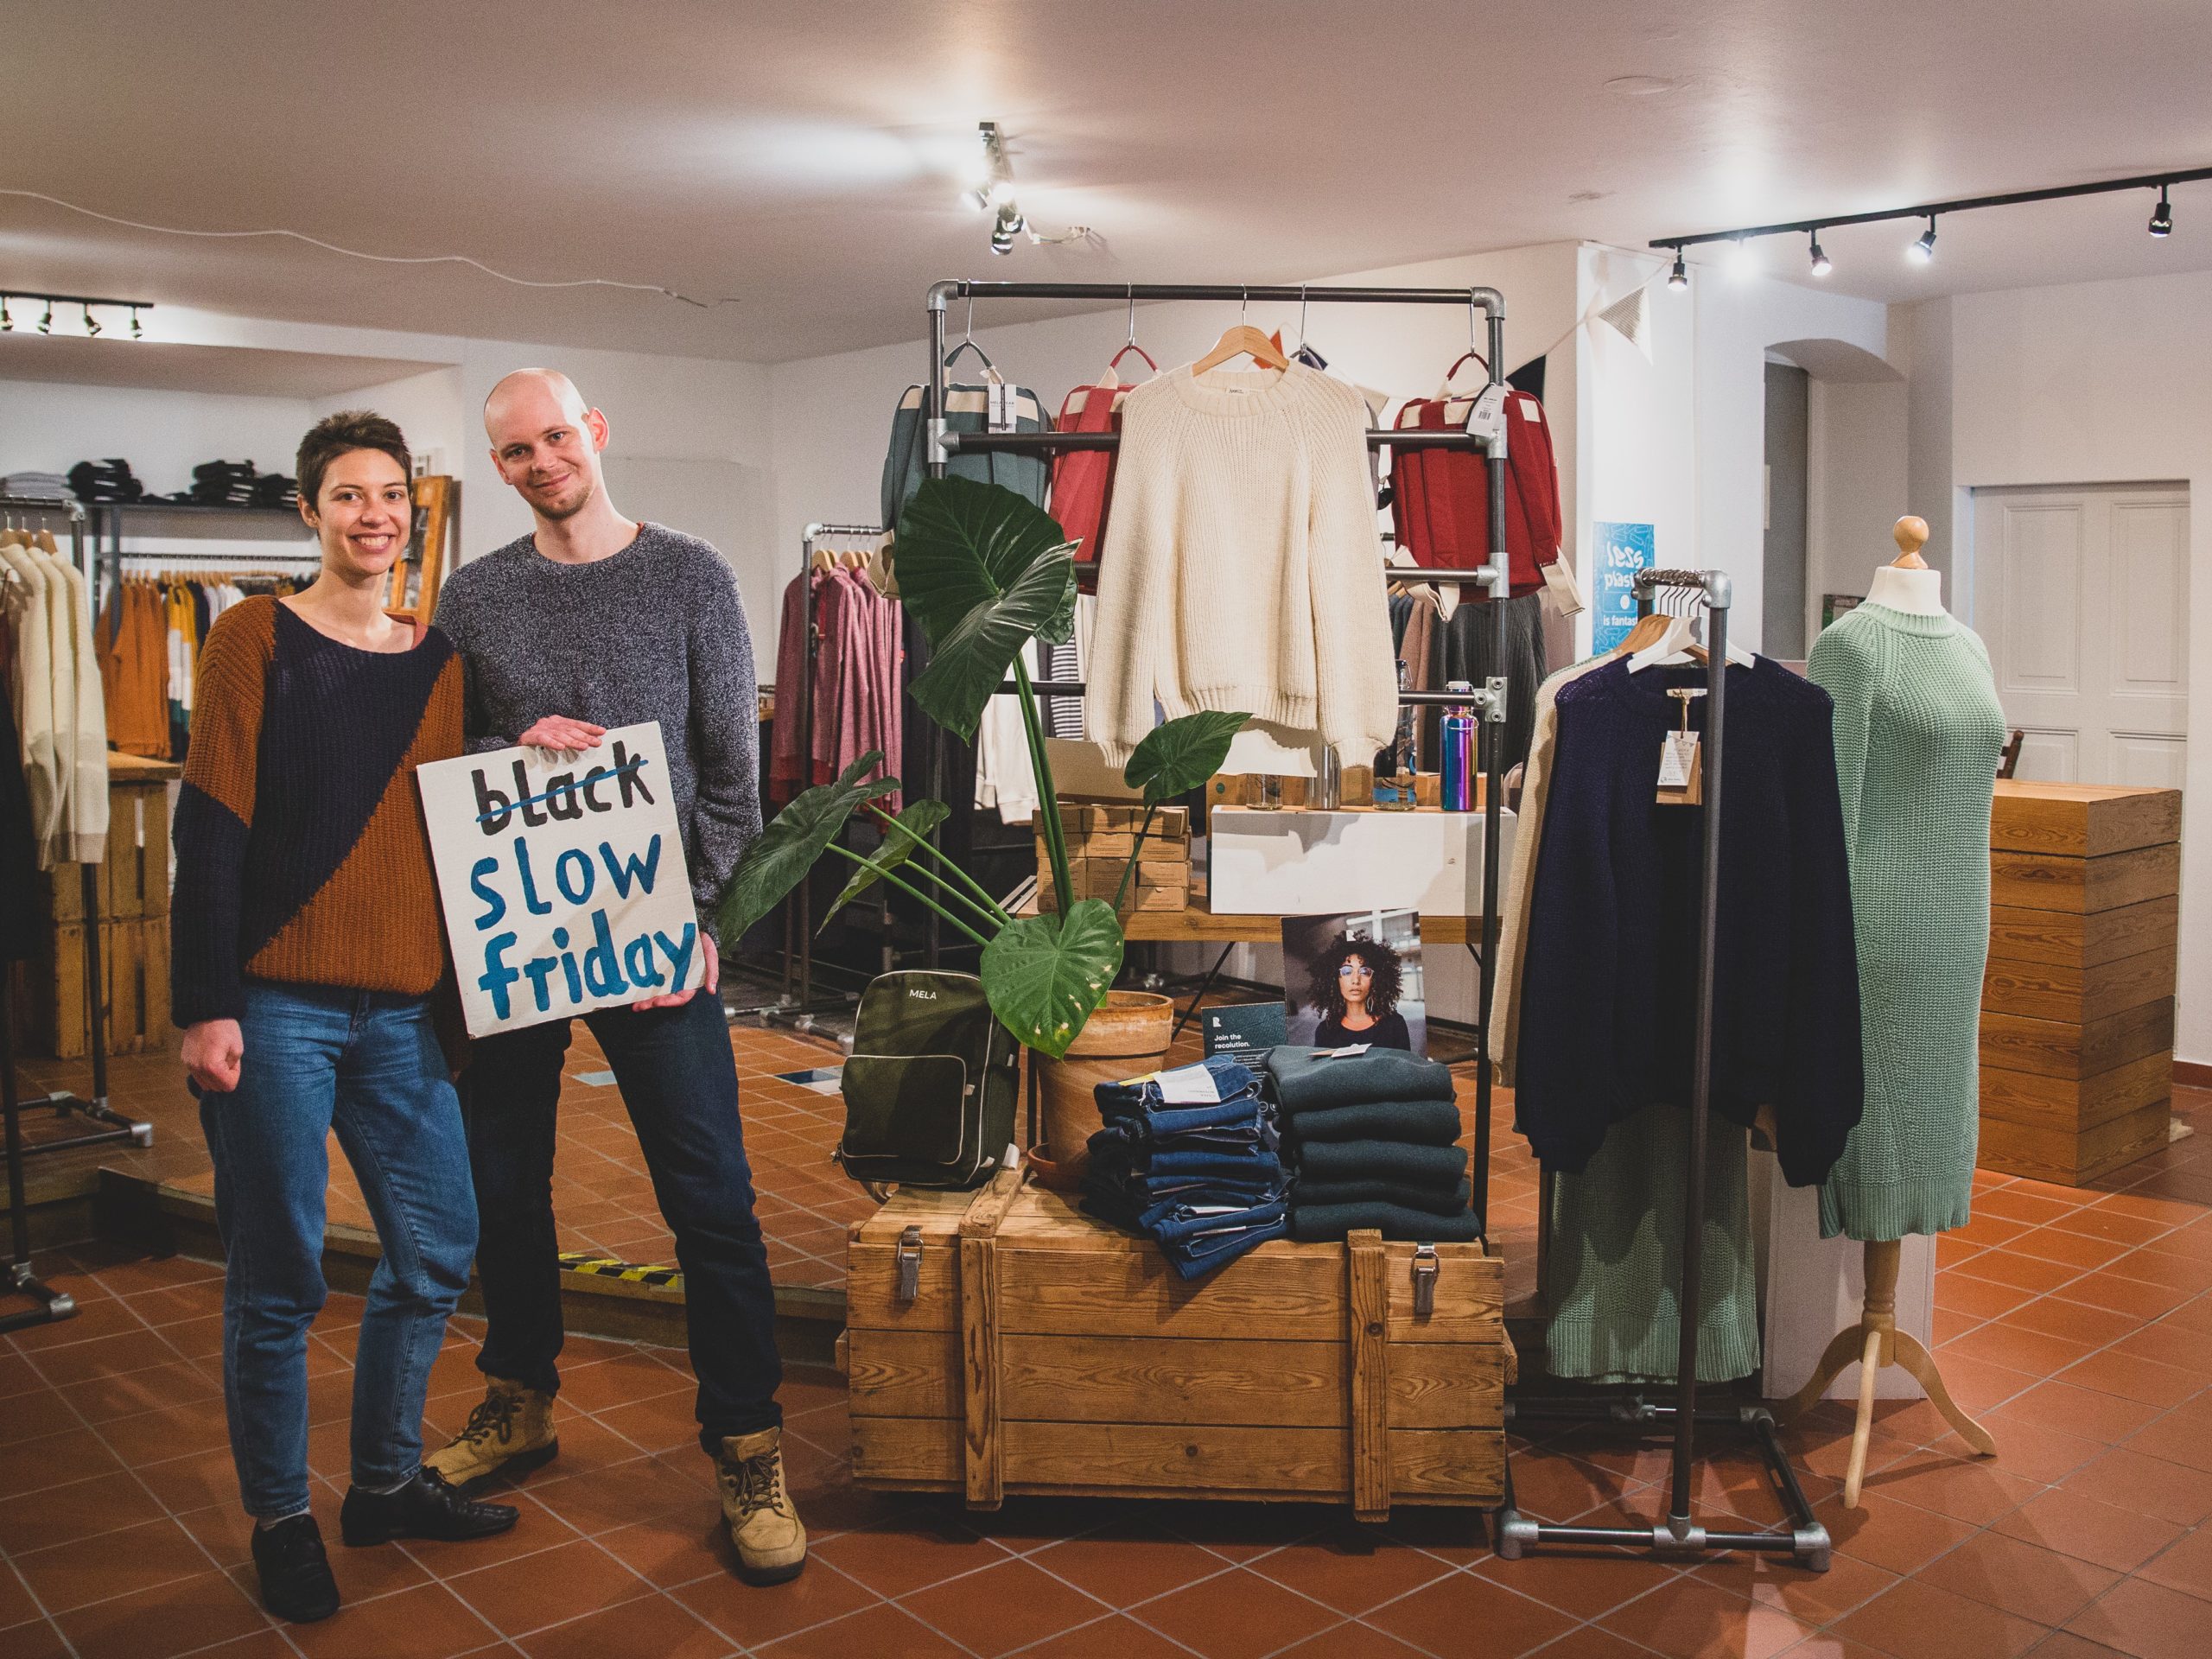 vegane Kleidung kaufen in Berlin Die beiden Gründer:innen von Slow Friday fanden in Berlin nicht die nachhaltige Mode, die sie sich wünschten – und eröffneten daraufhin ihr Geschäft in Mitte.